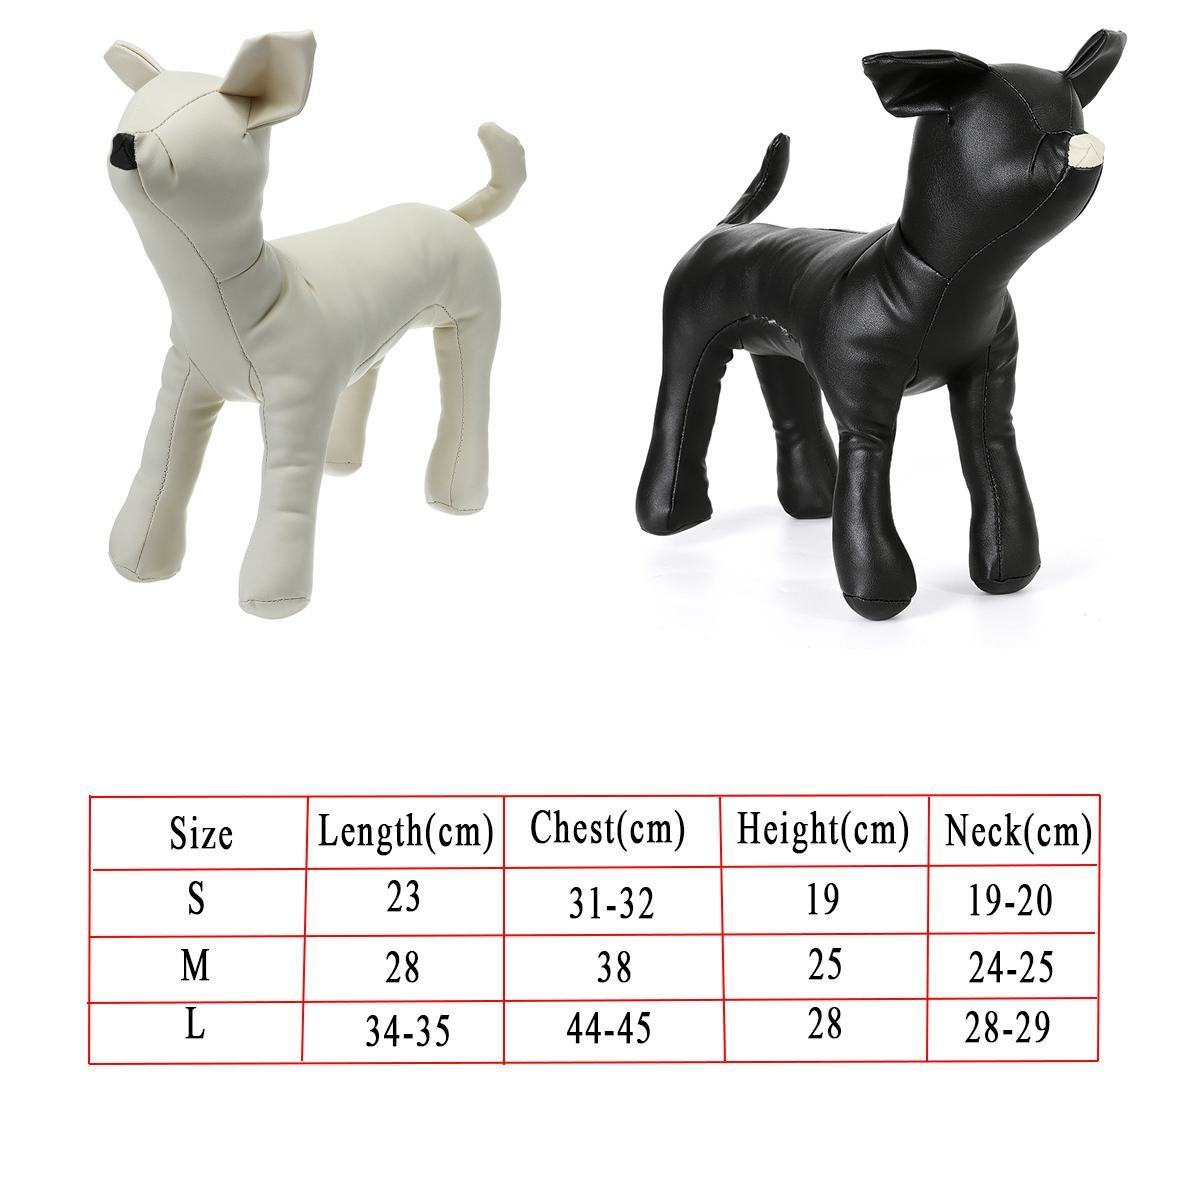 Köpek oyuncakları çiğneme deri mankenler ayakta pozisyon modelleri evcil hayvan dükkanı ekran manken 3 boyutu 221108